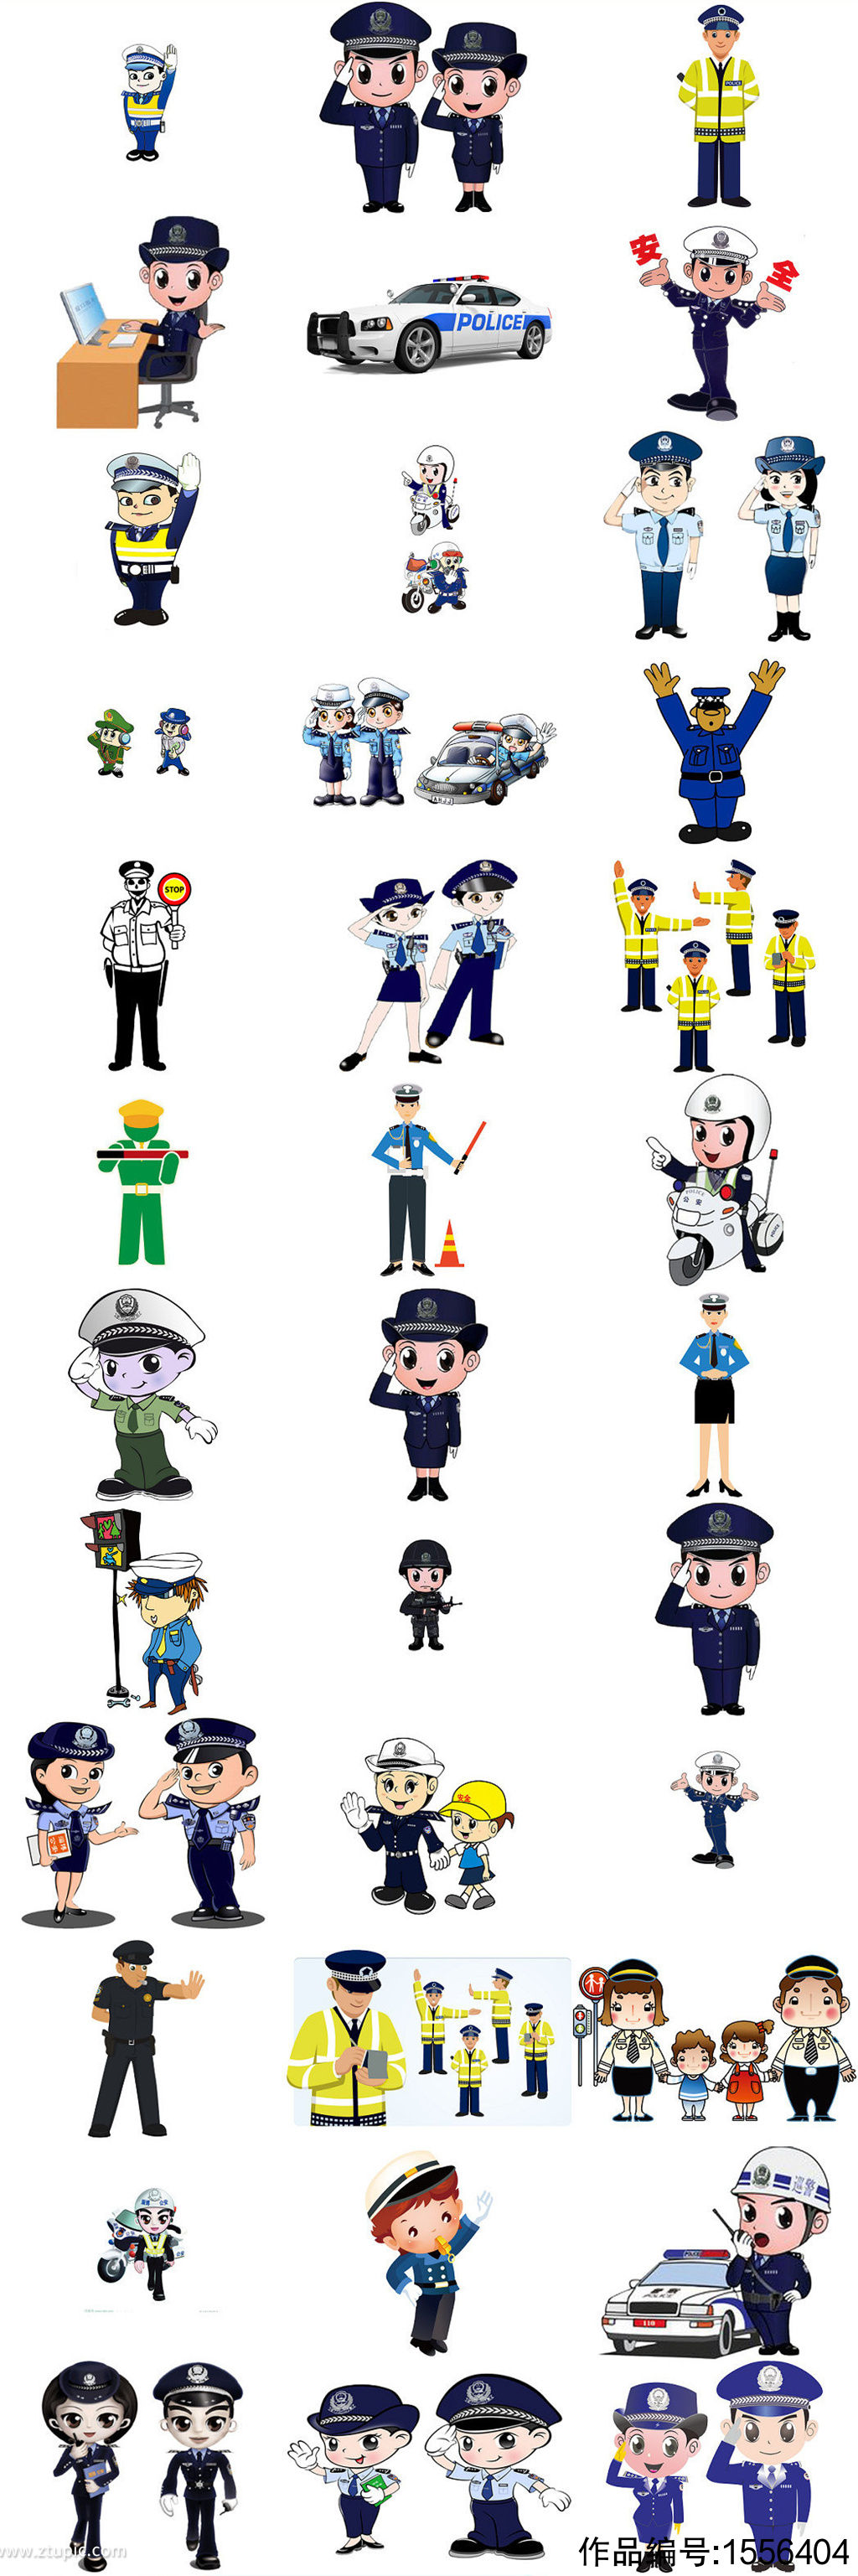 交通警察人物形象海报设计素材